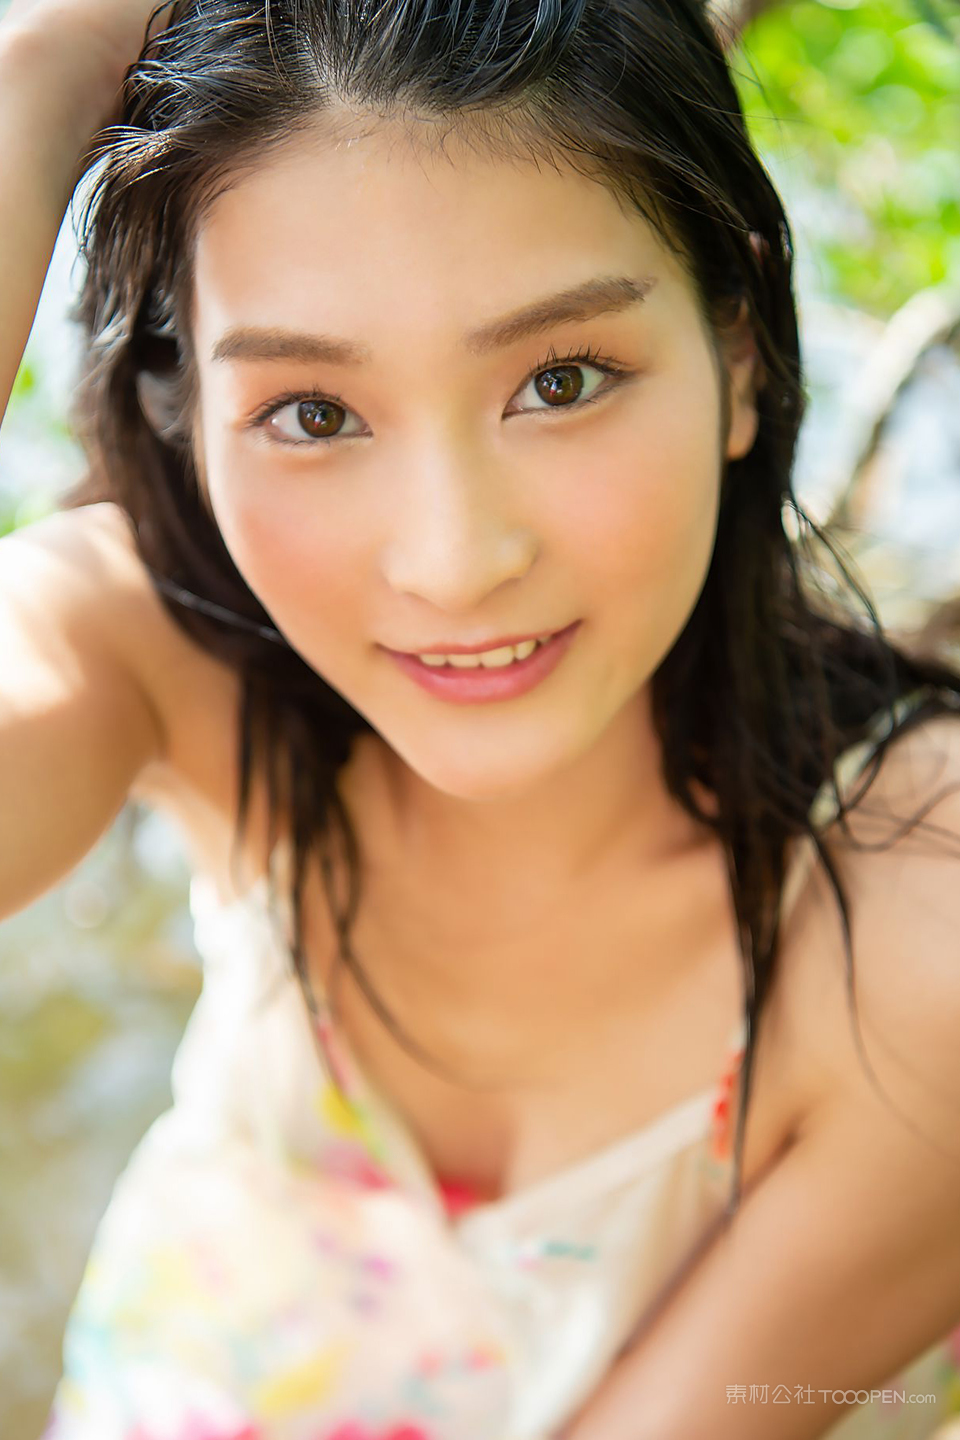 湿身大战日本高等学校美少女湿身露乳写真照